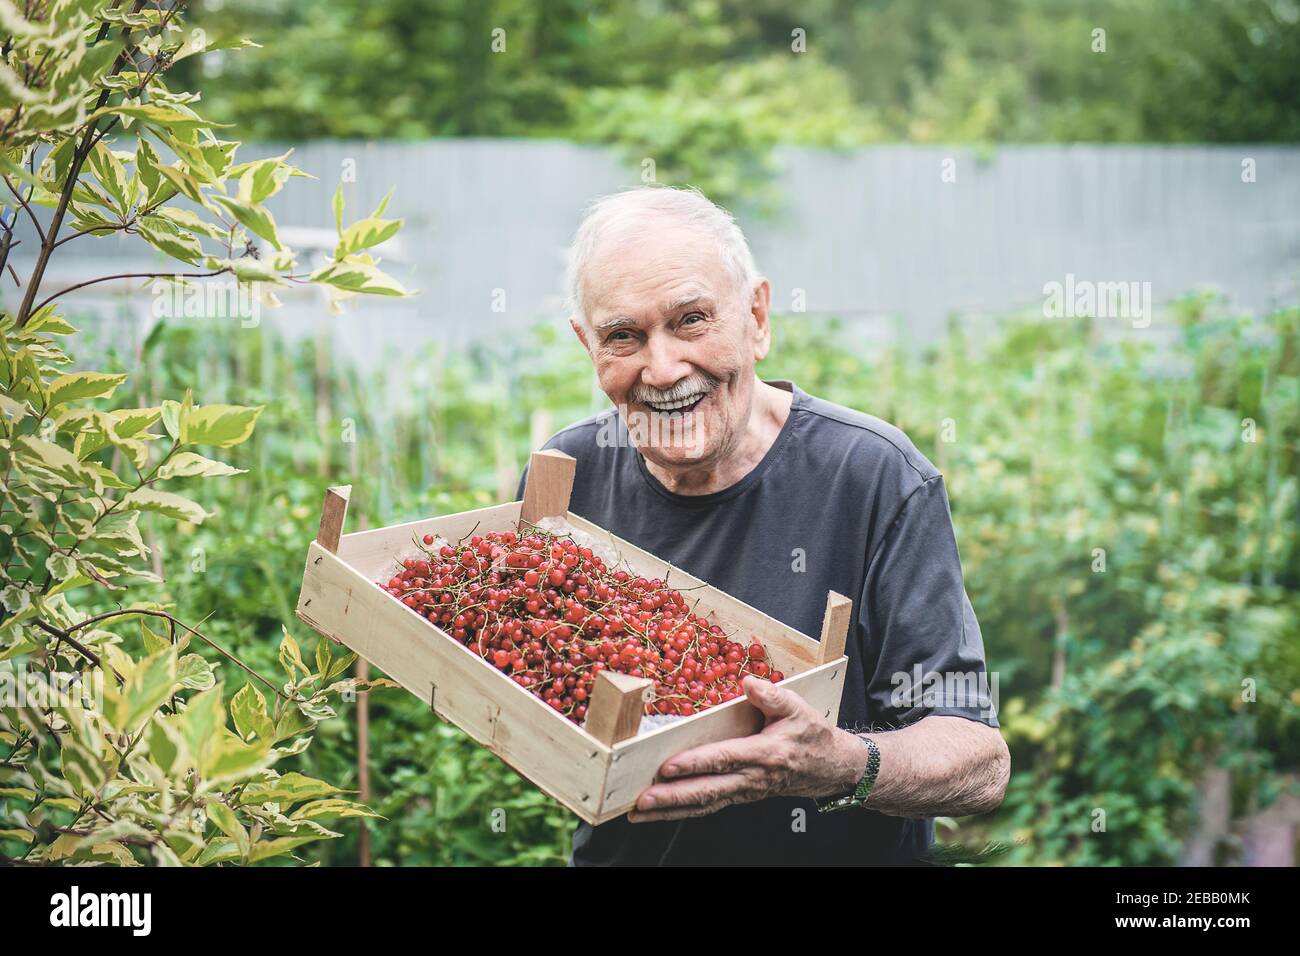 Alte Menschen mit einer Ernte von Beeren. Ein alter Bauer hält einen Korb mit roten Johannisbeeren in der Hand. Glückliches, aktives Alter. Stockfoto